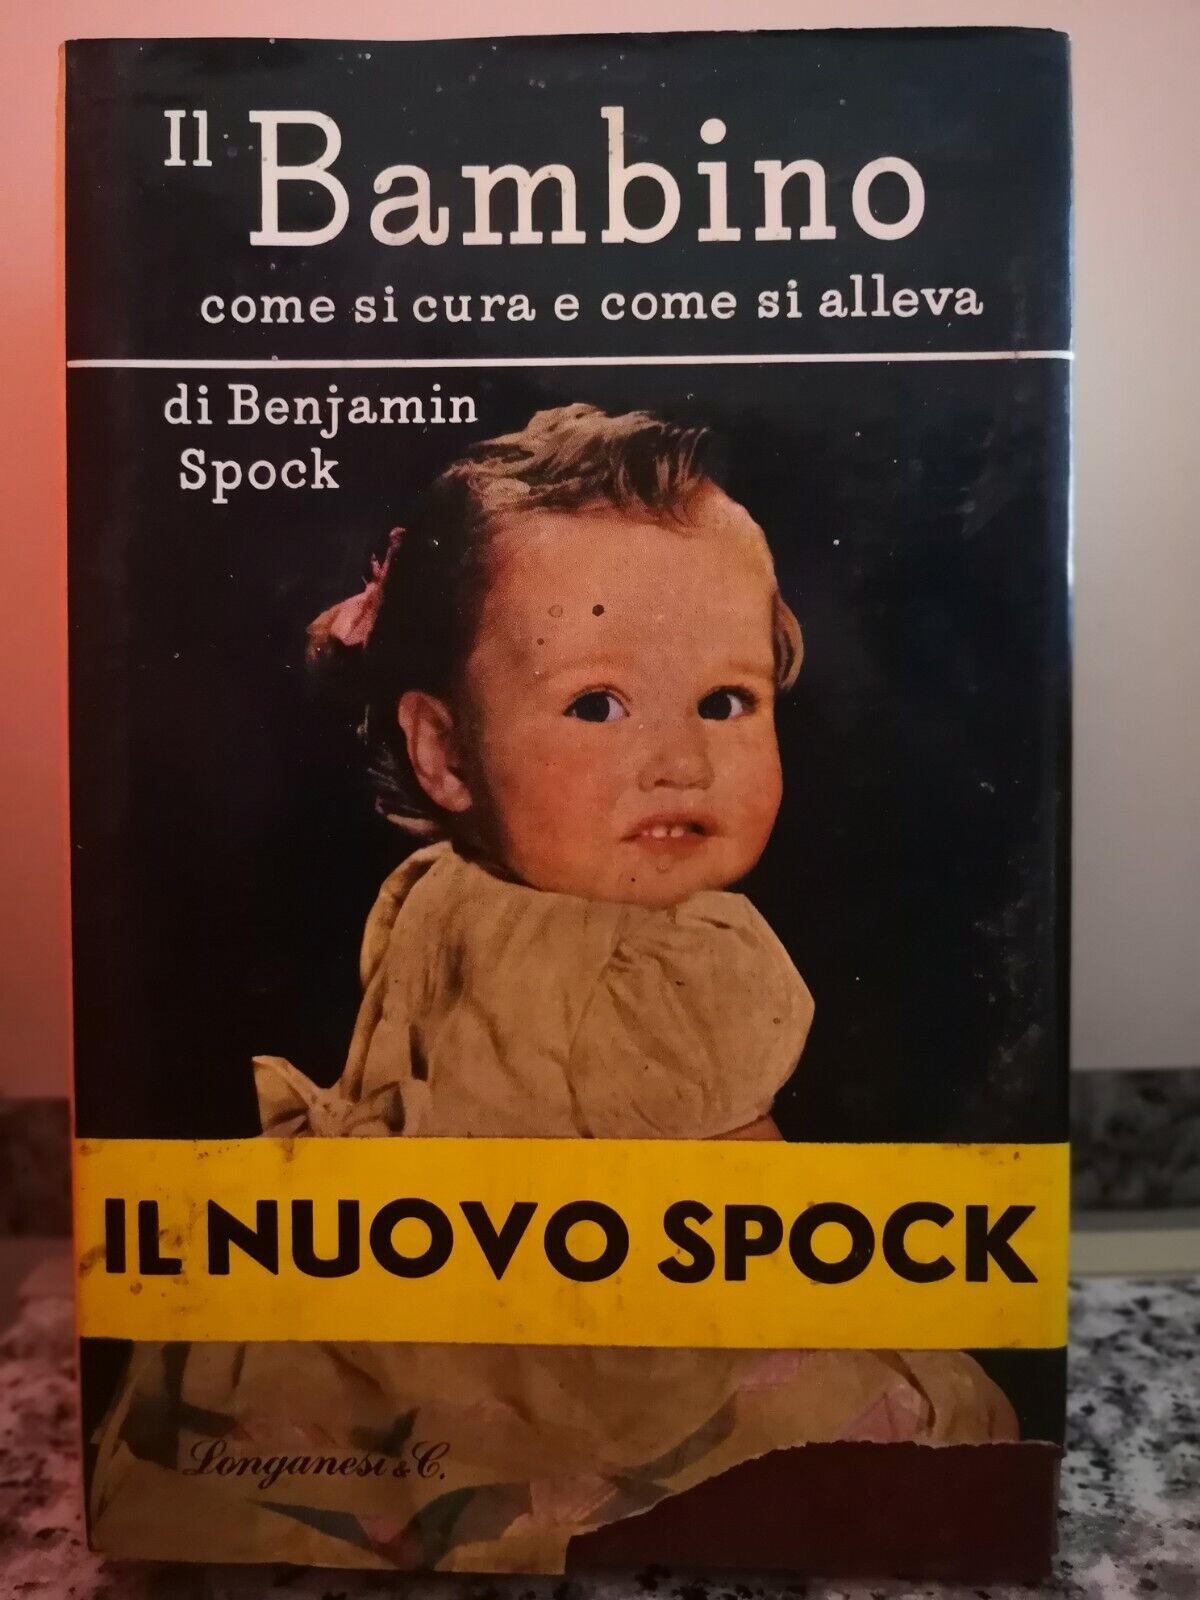 Il Bambino Come si cura e come si alleva di Benjamin Spock,1971,  Longanesi-F